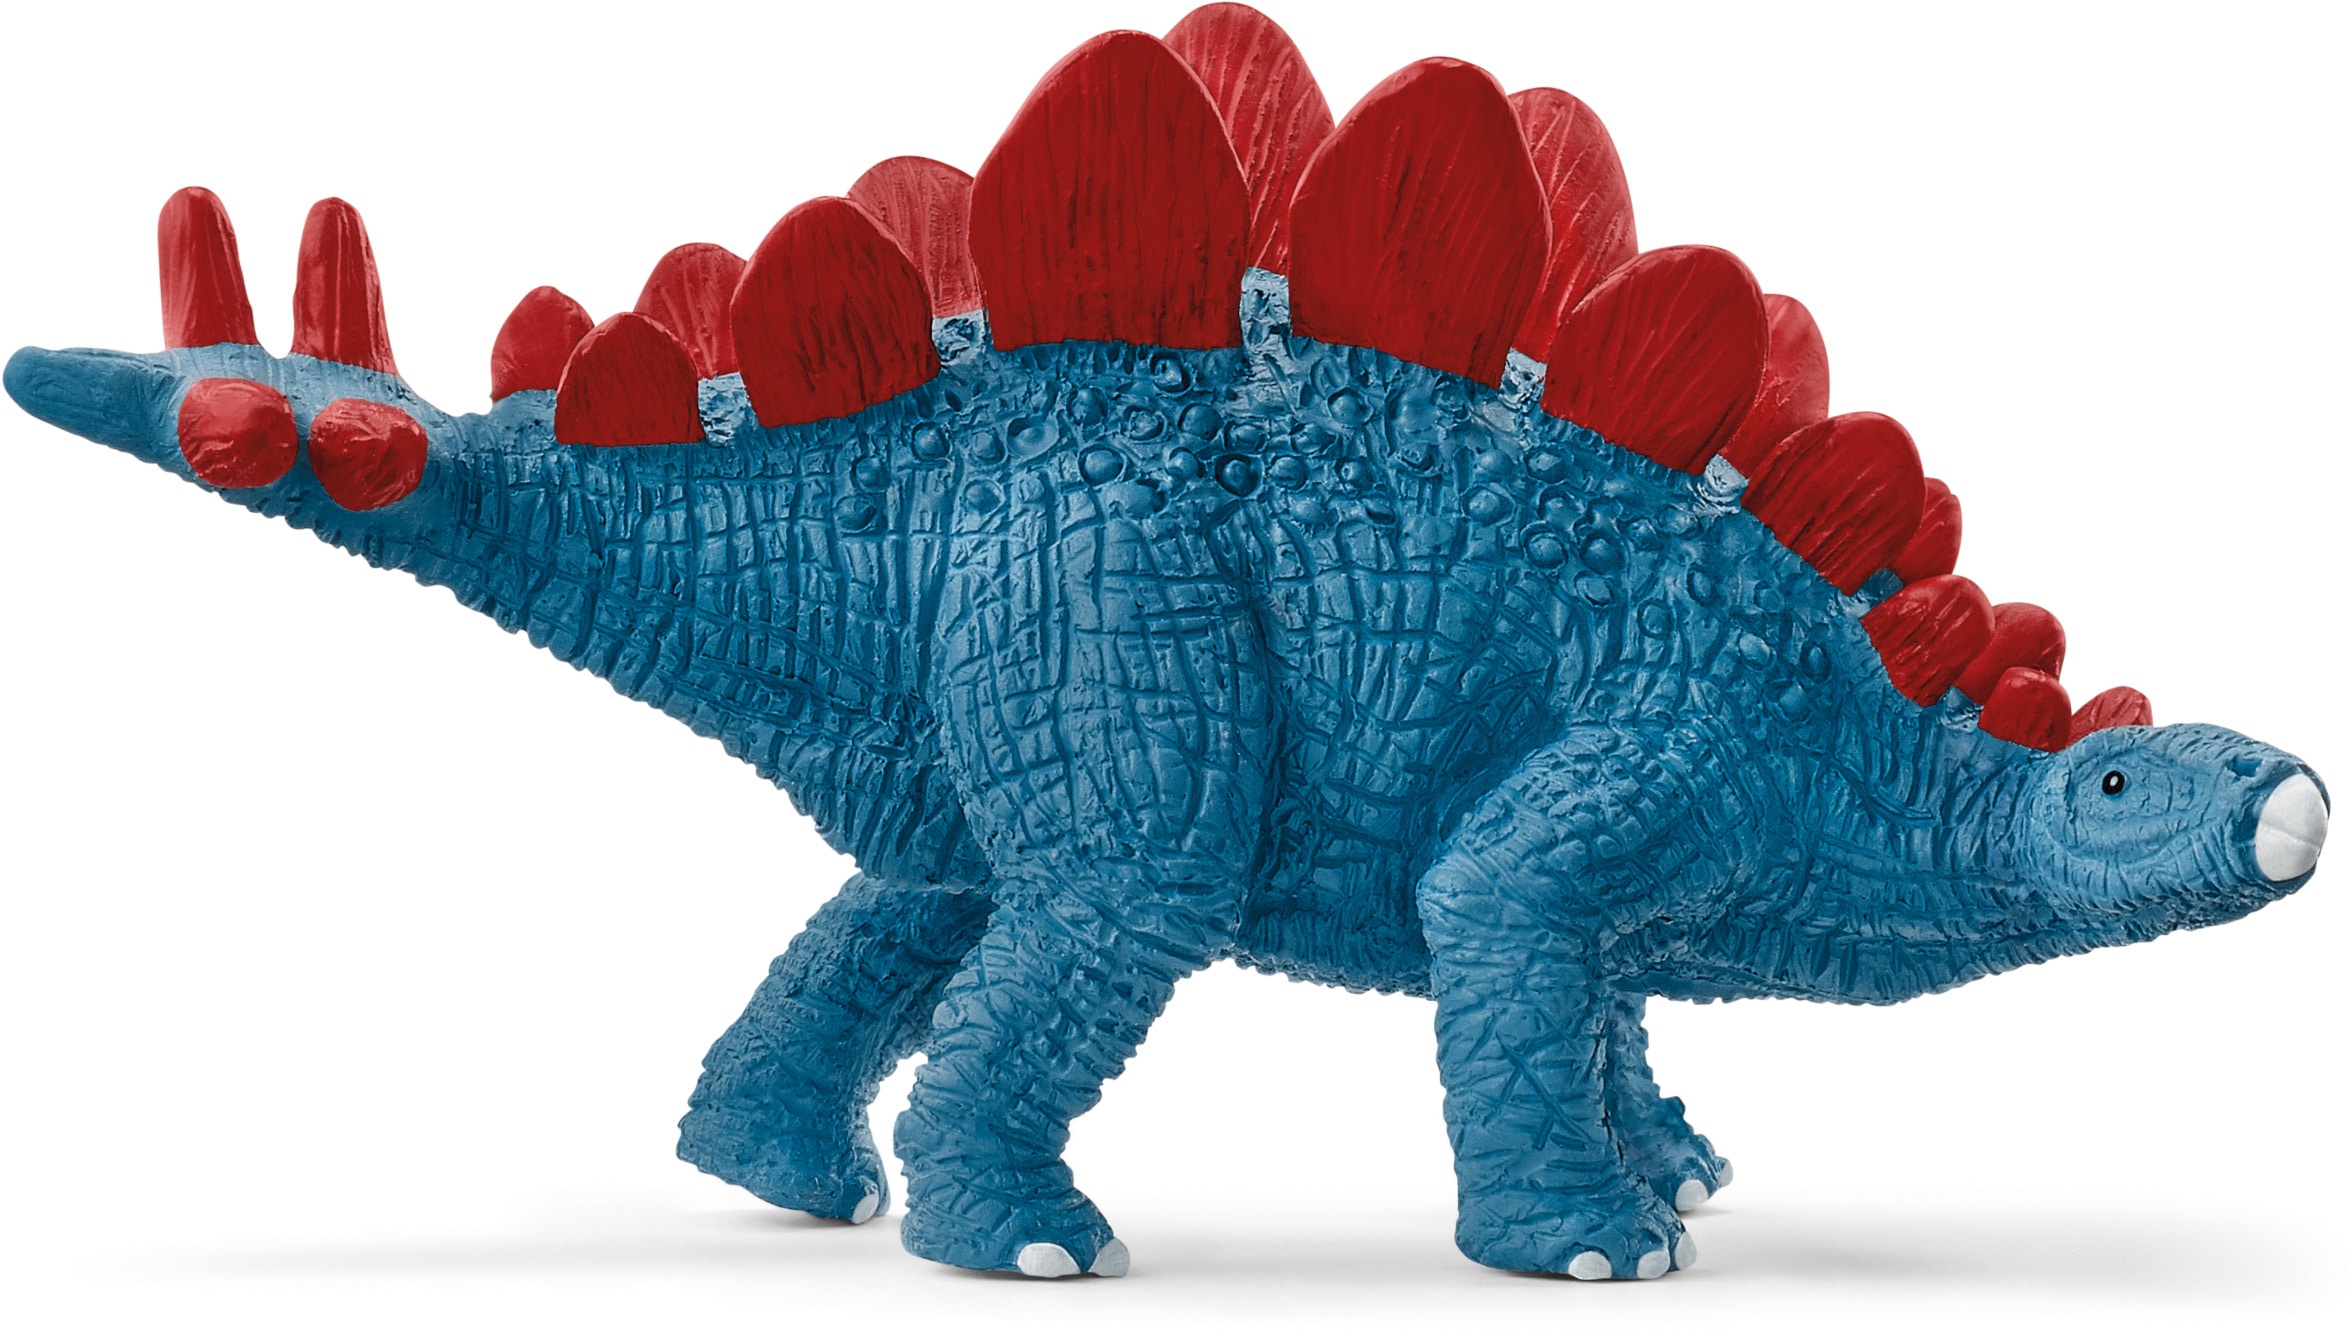 Schleich® Spielfigur »DINOSAURS, Tyrannosaurus Rex Angriff (41465)«, (Set)